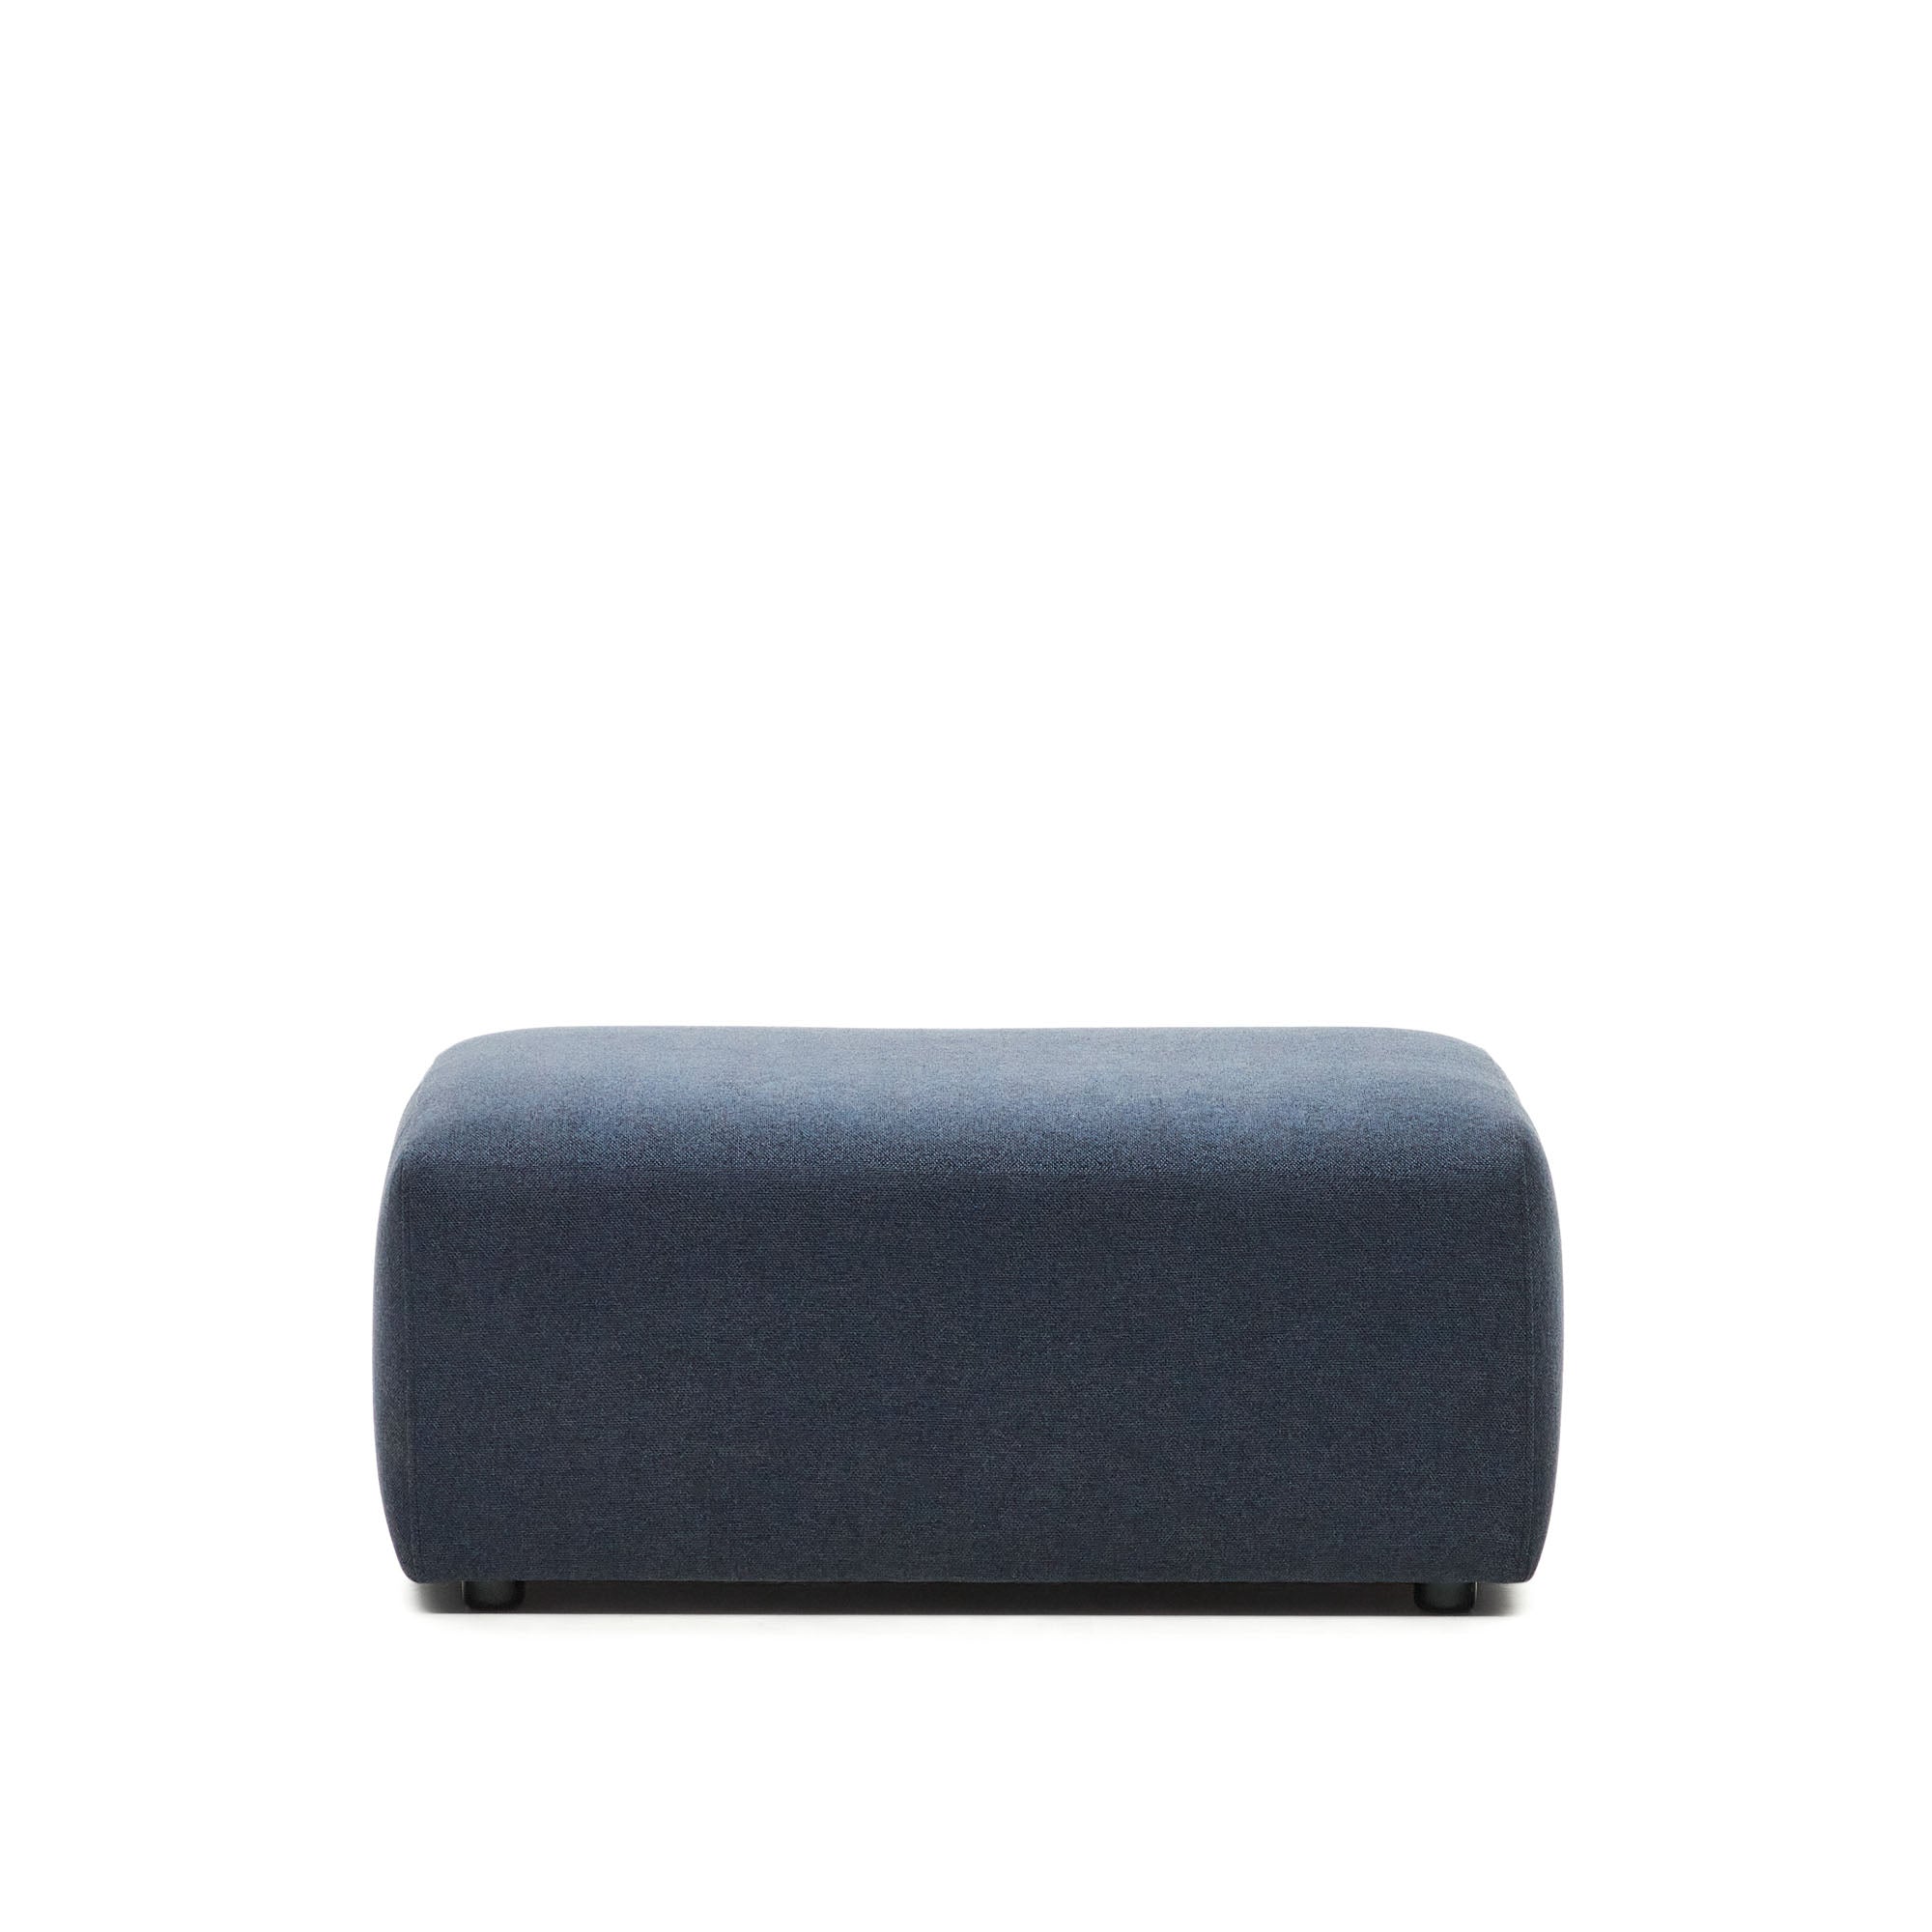 Neom end pouffe in blue, 75 x 89 cm